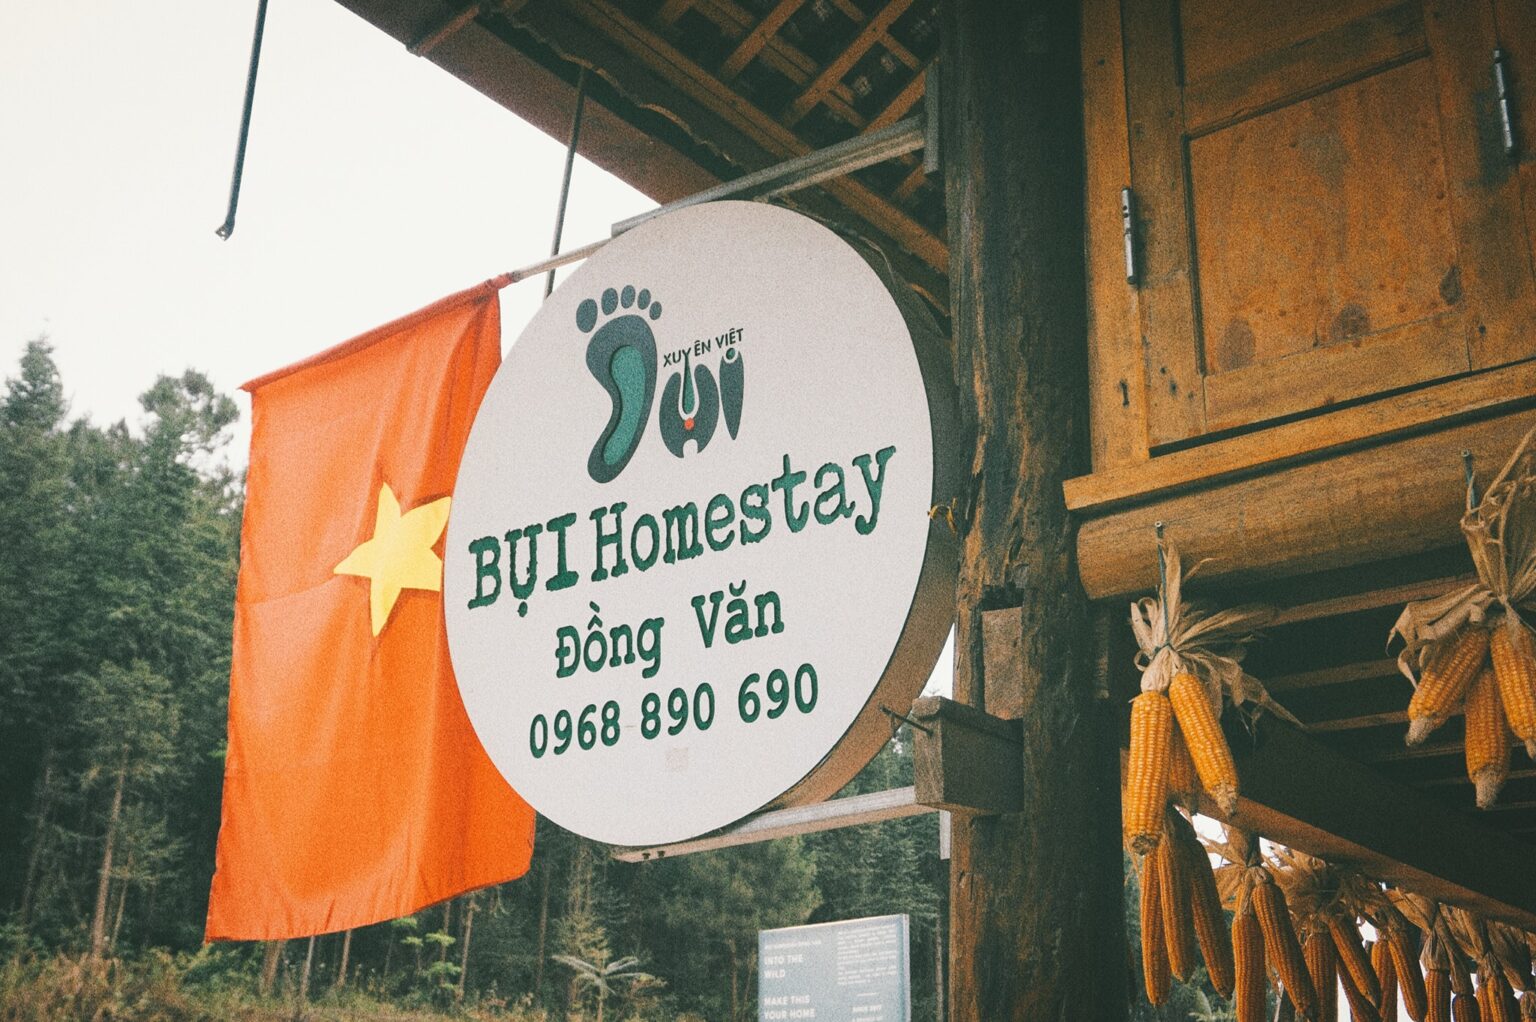  Bụi Homestay Đồng Văn